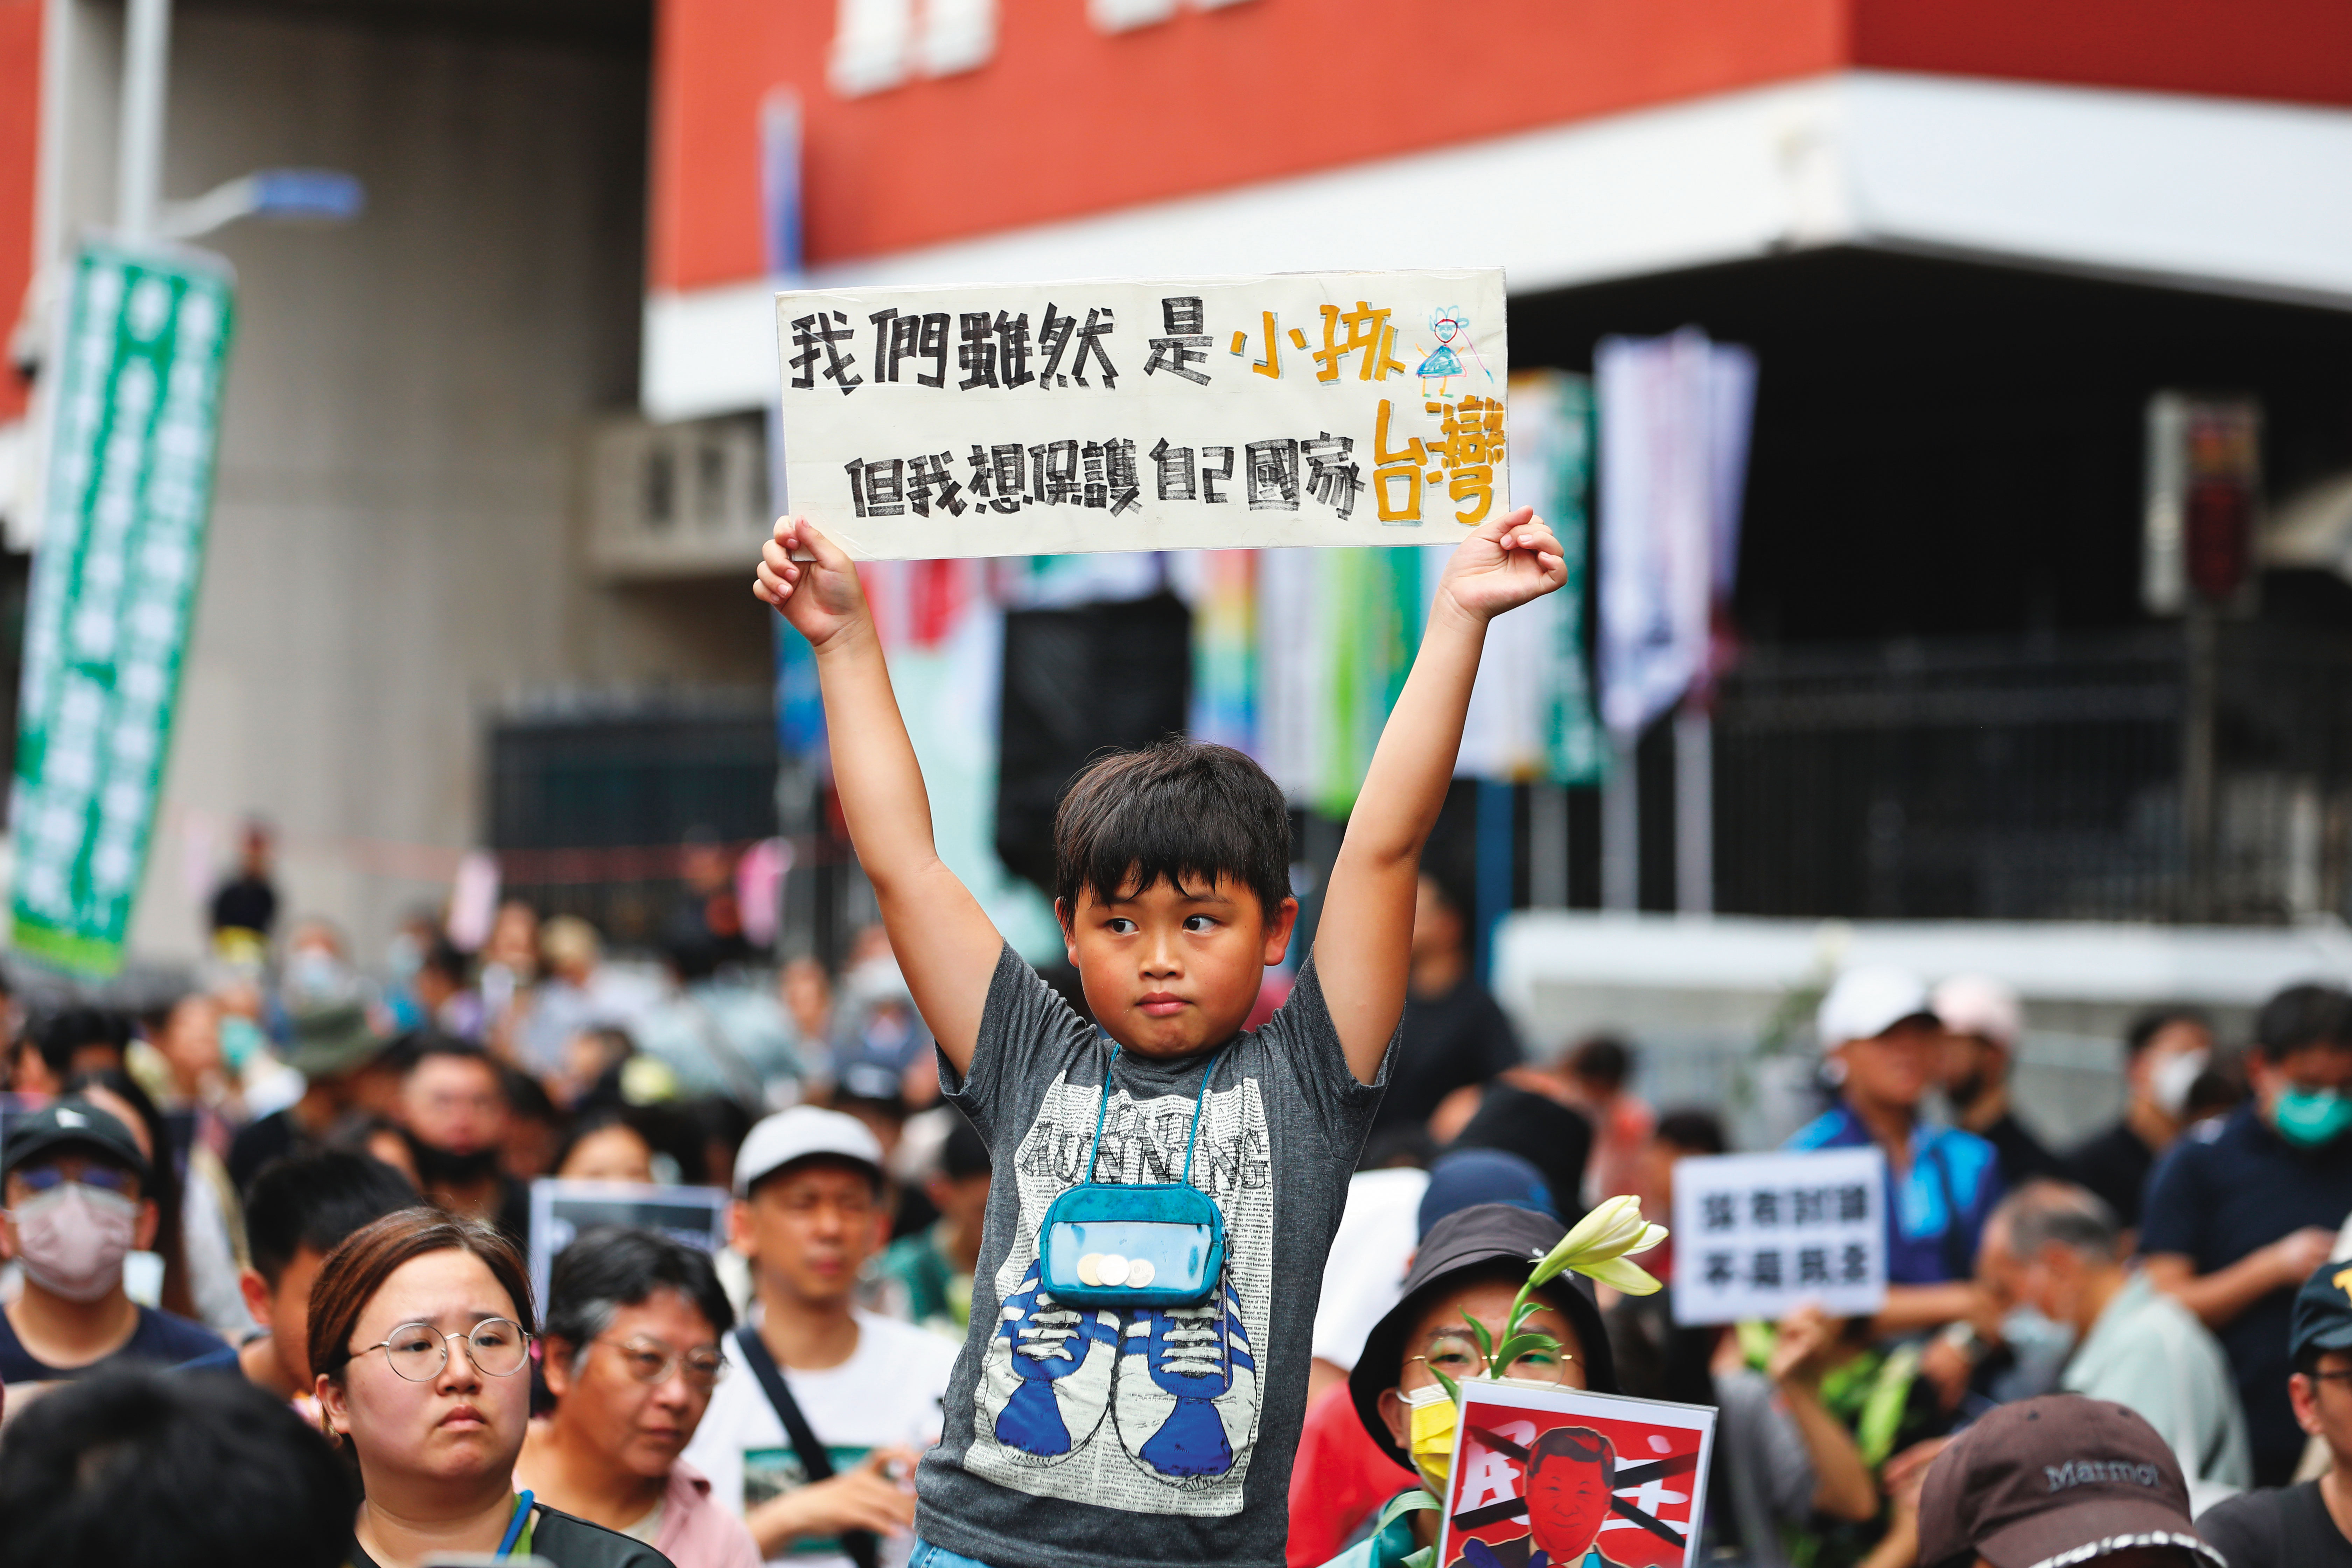 立院外小朋友手舉著「我們雖然是小孩但我想保護自己國家台灣」的看板。